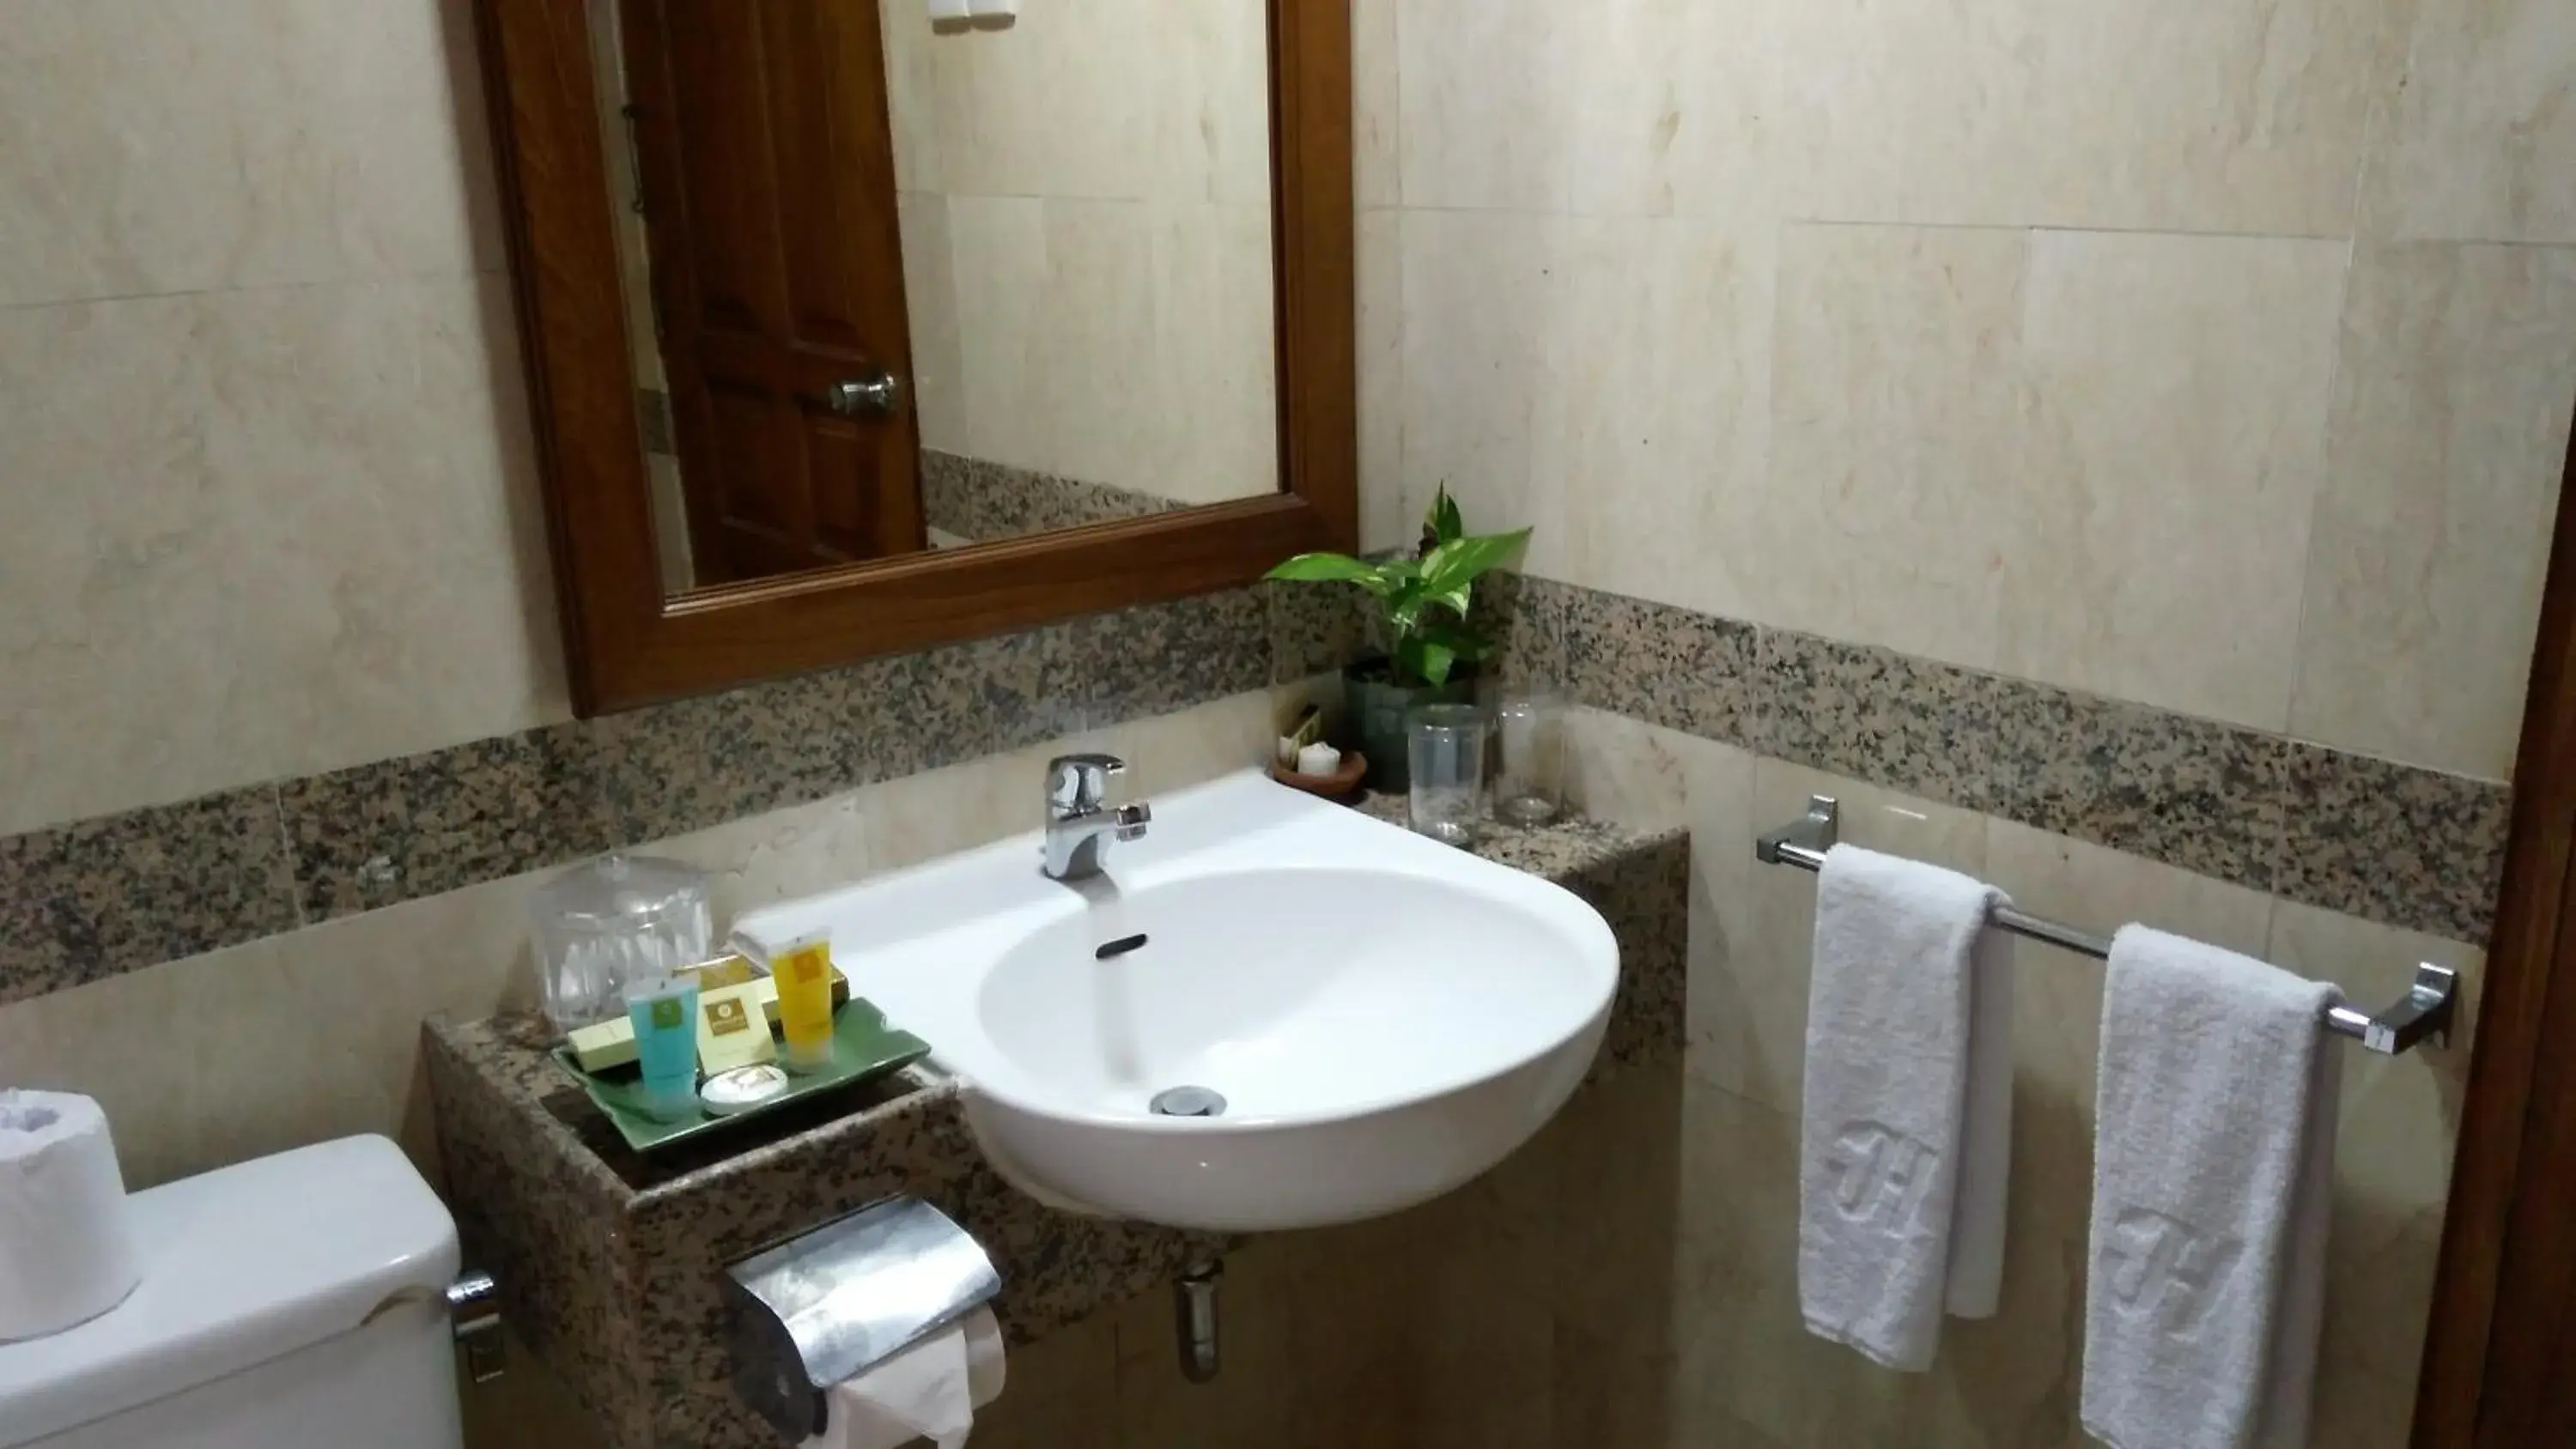 Bathroom in Jayakarta Hotel Bali